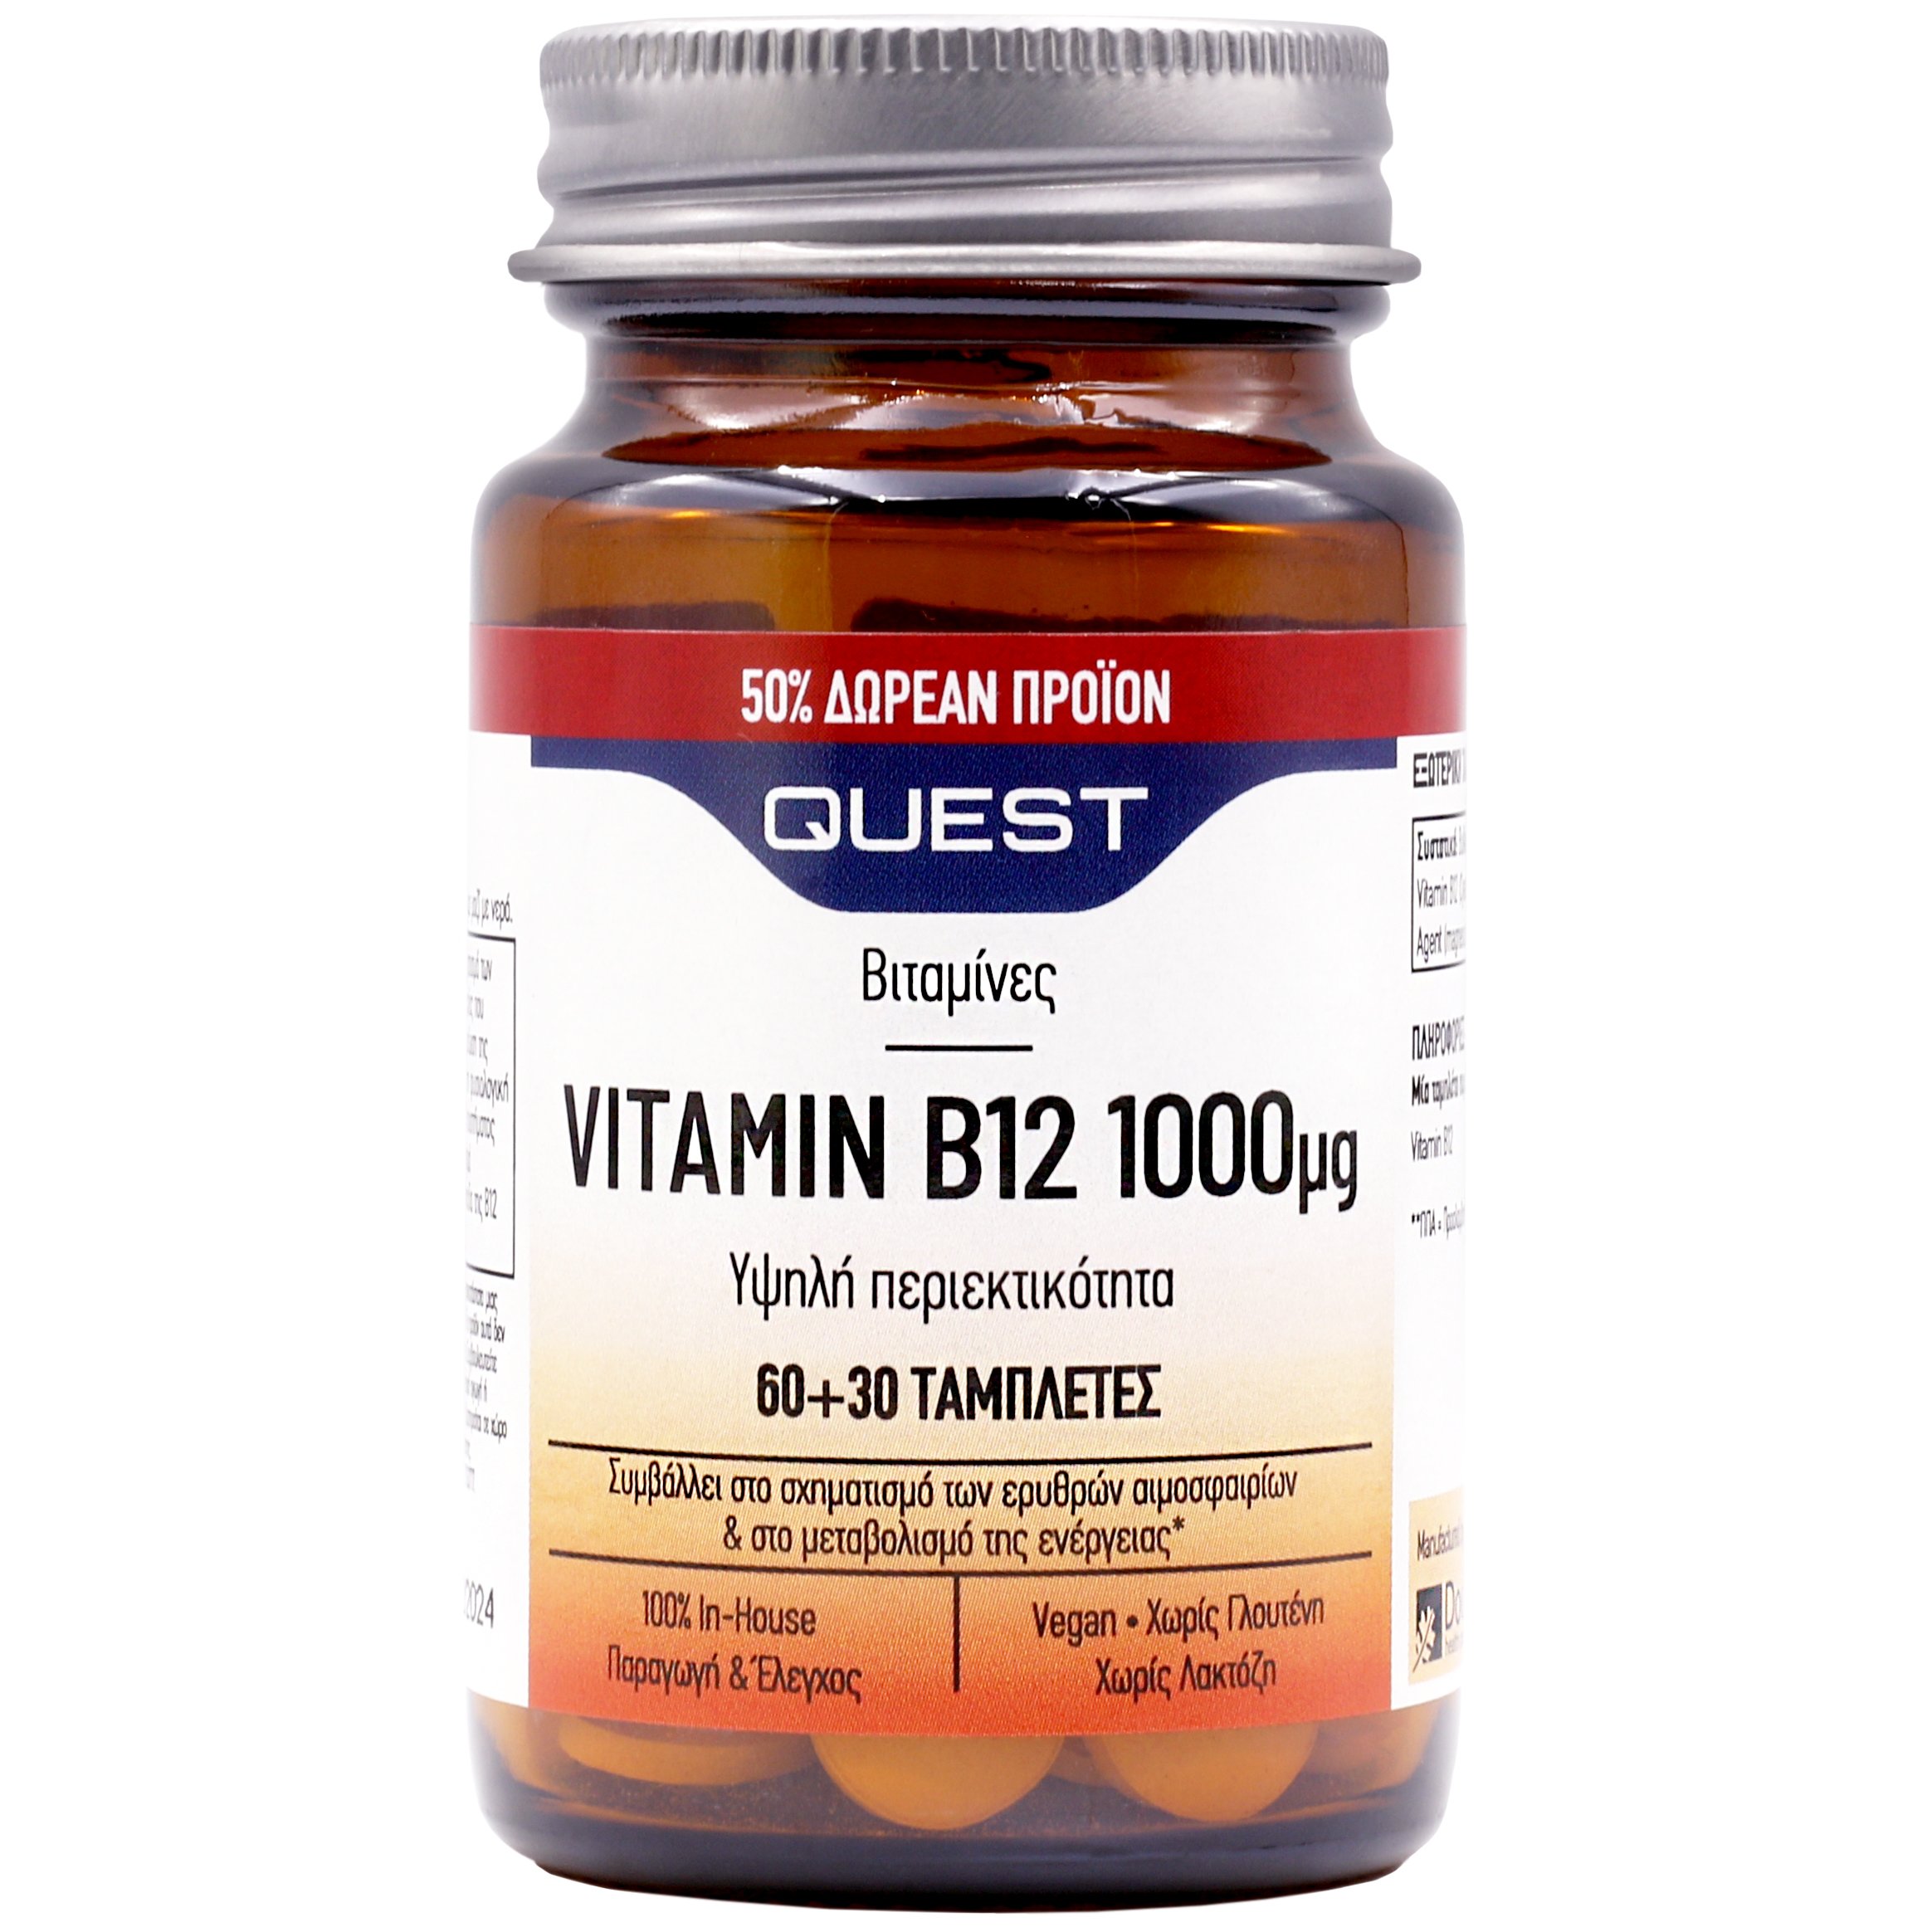 Vitamin quest. Stray b12. Vitamin Quest 2. Vitamin-Quest-Seque.